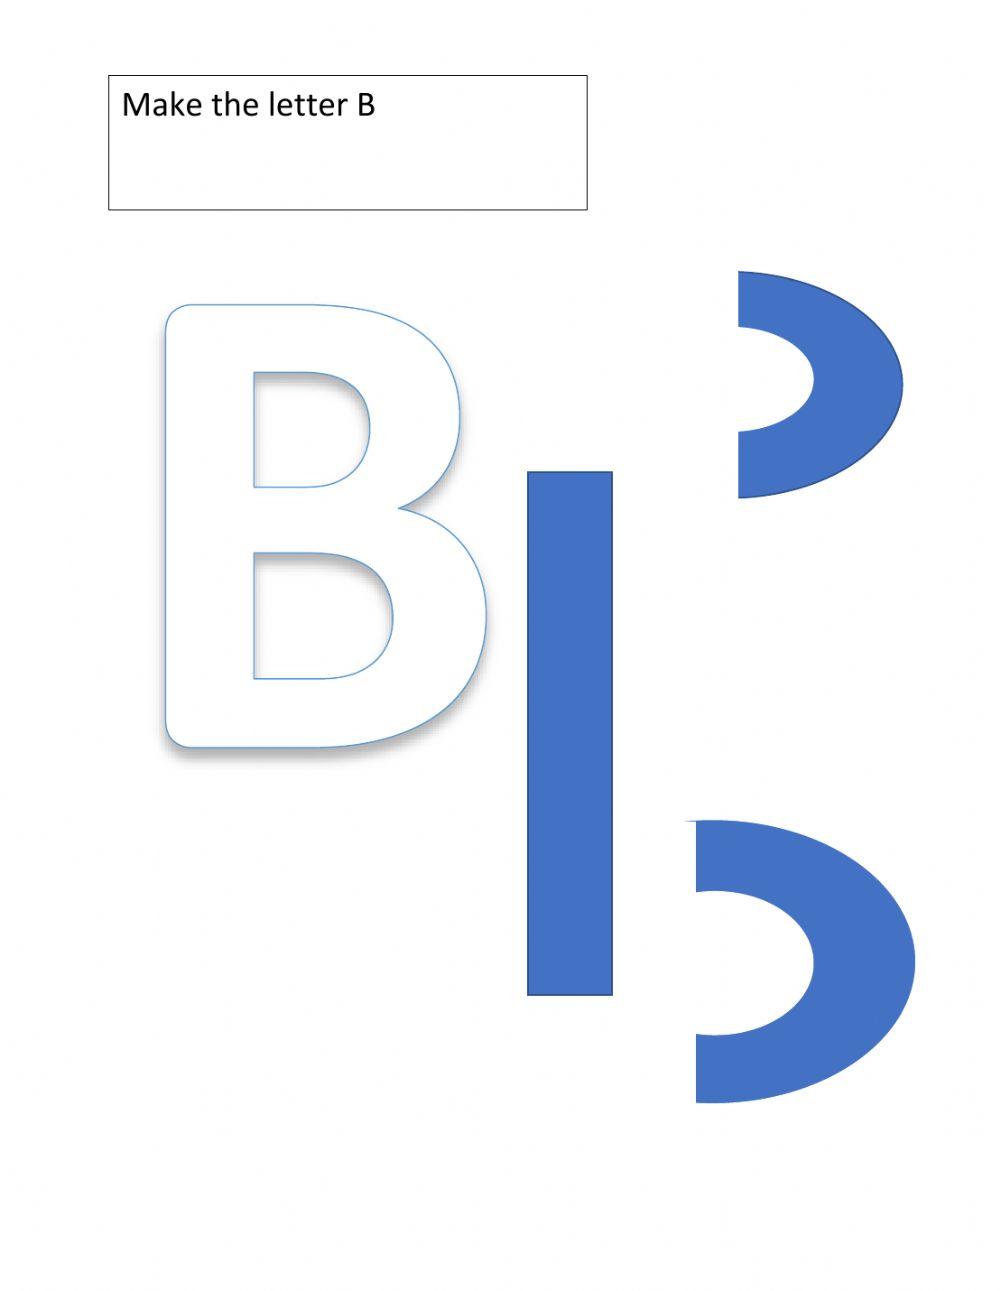 Make the letter B